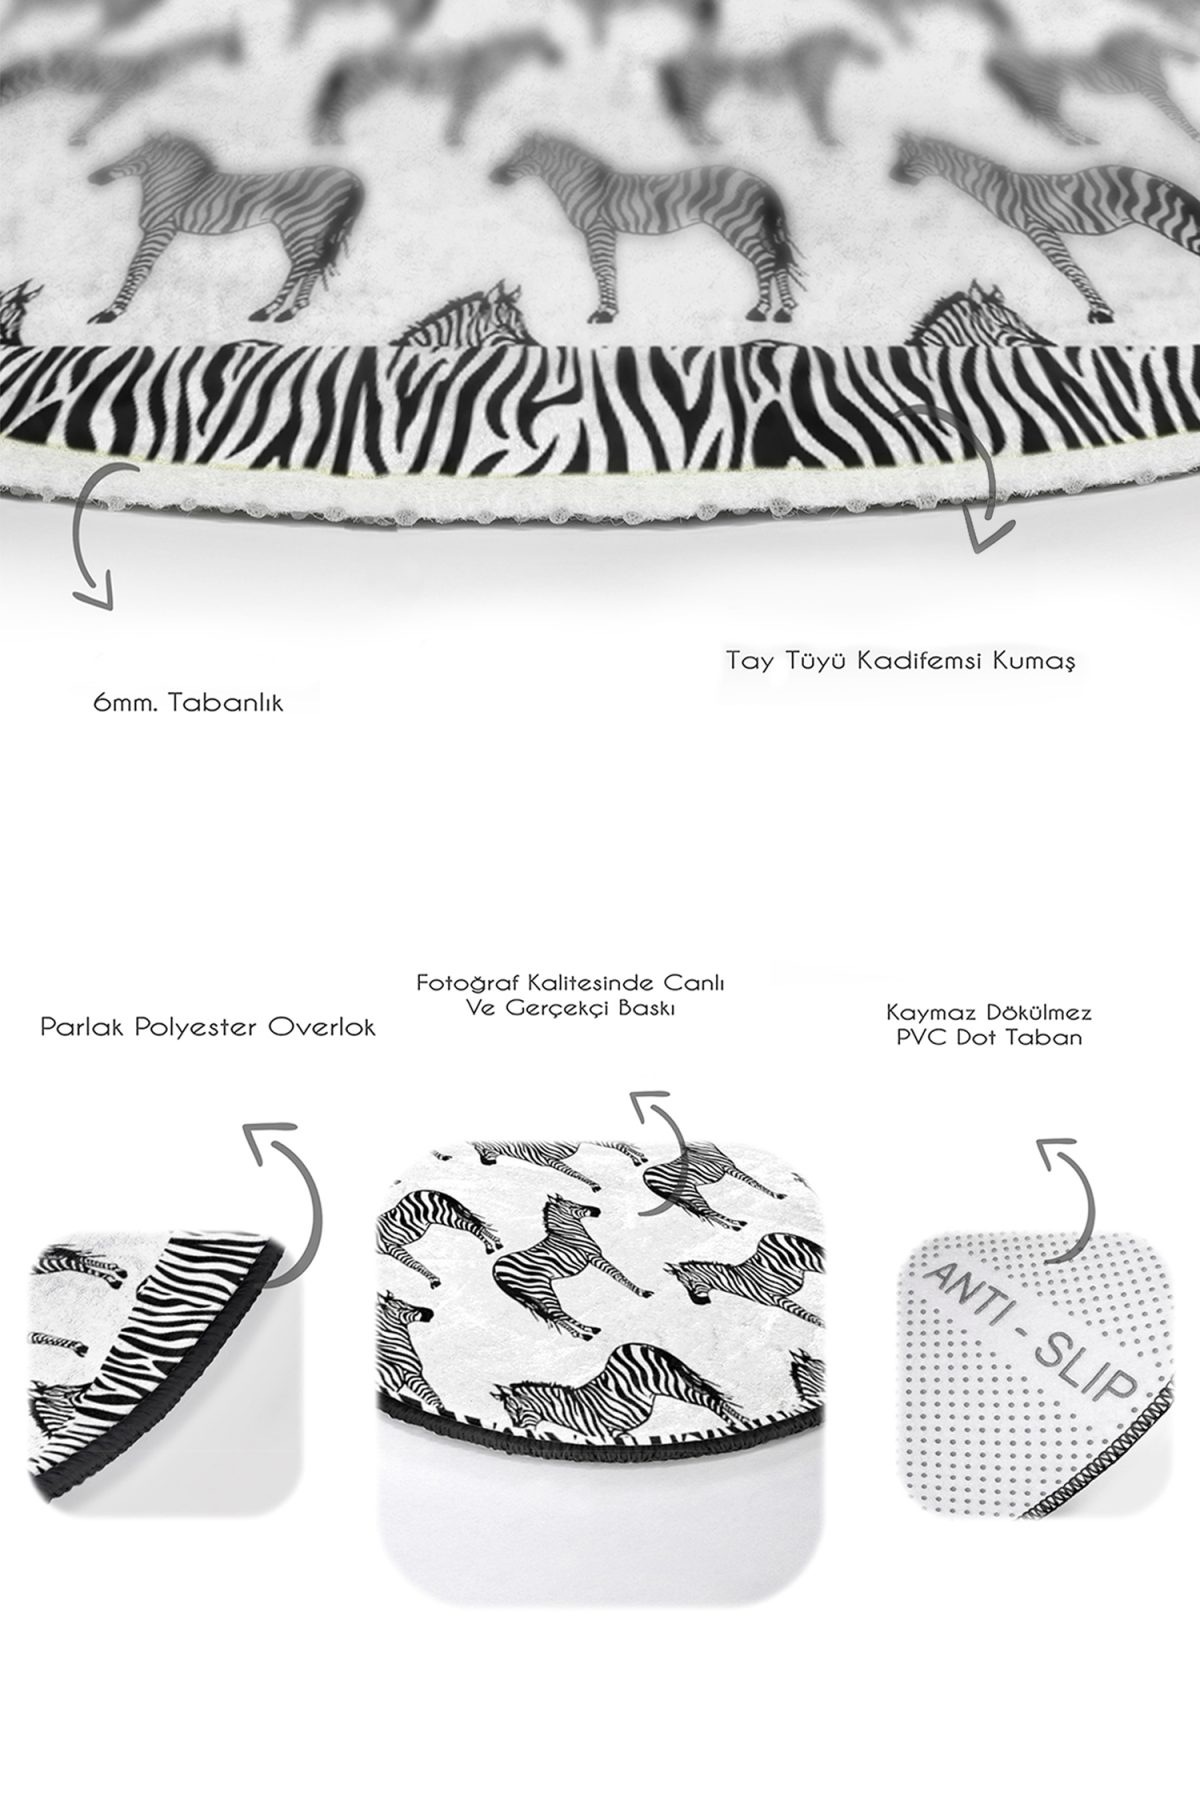 Siyah Beyaz Zebra Desenli 2'li Oval Kaymaz Tabanlı Banyo Halı Takımı & Mutfak Paspas Takımı Realhomes